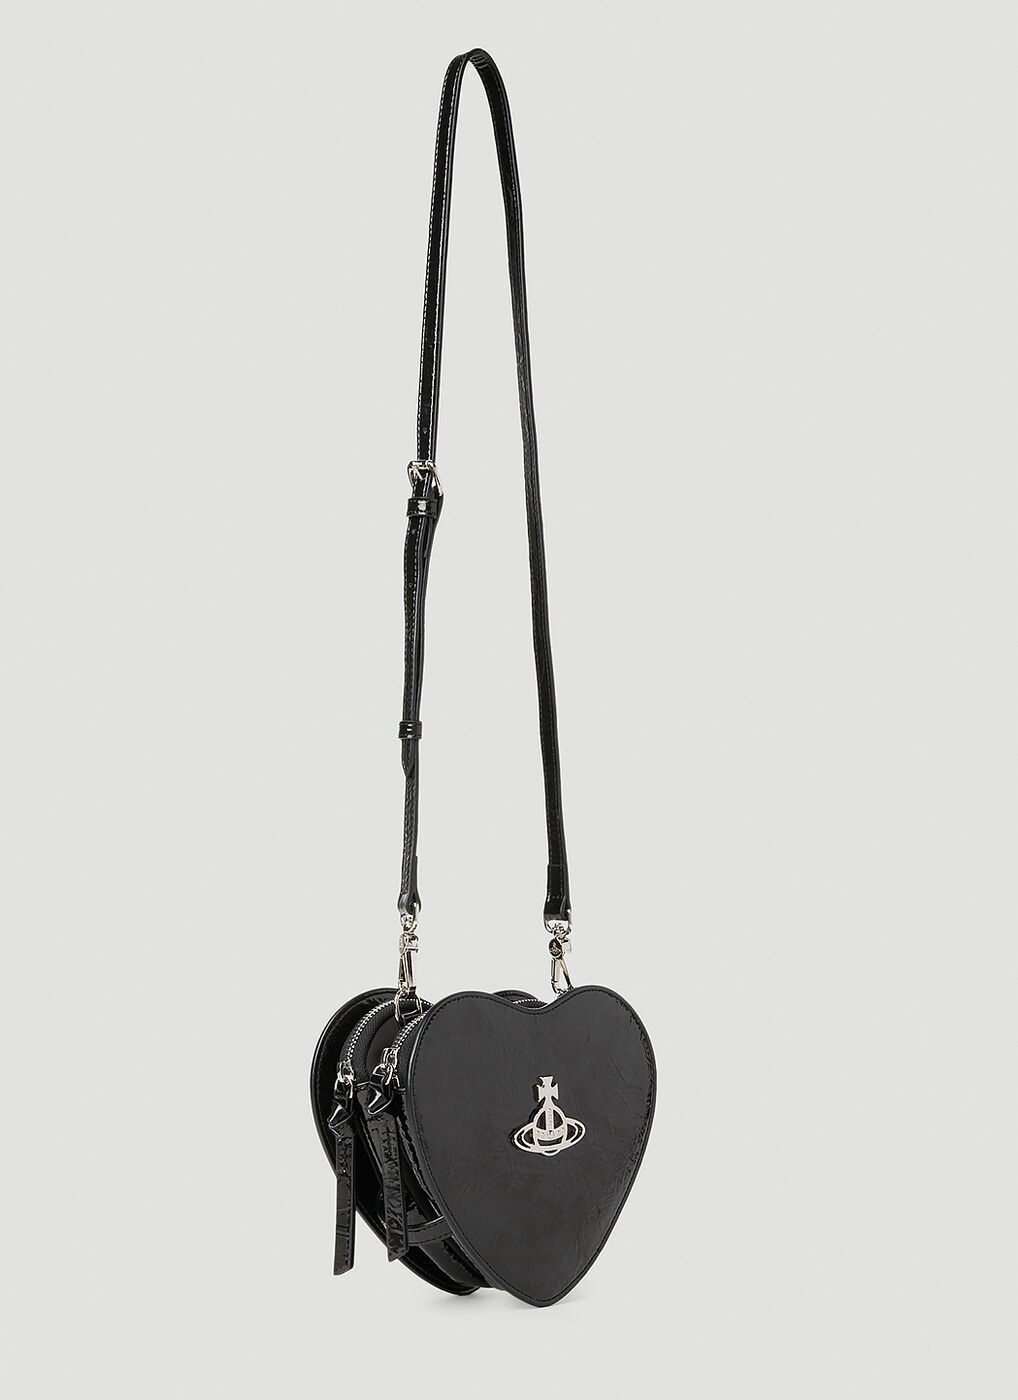 Vivienne Westwood Heart Shaped Bag Black